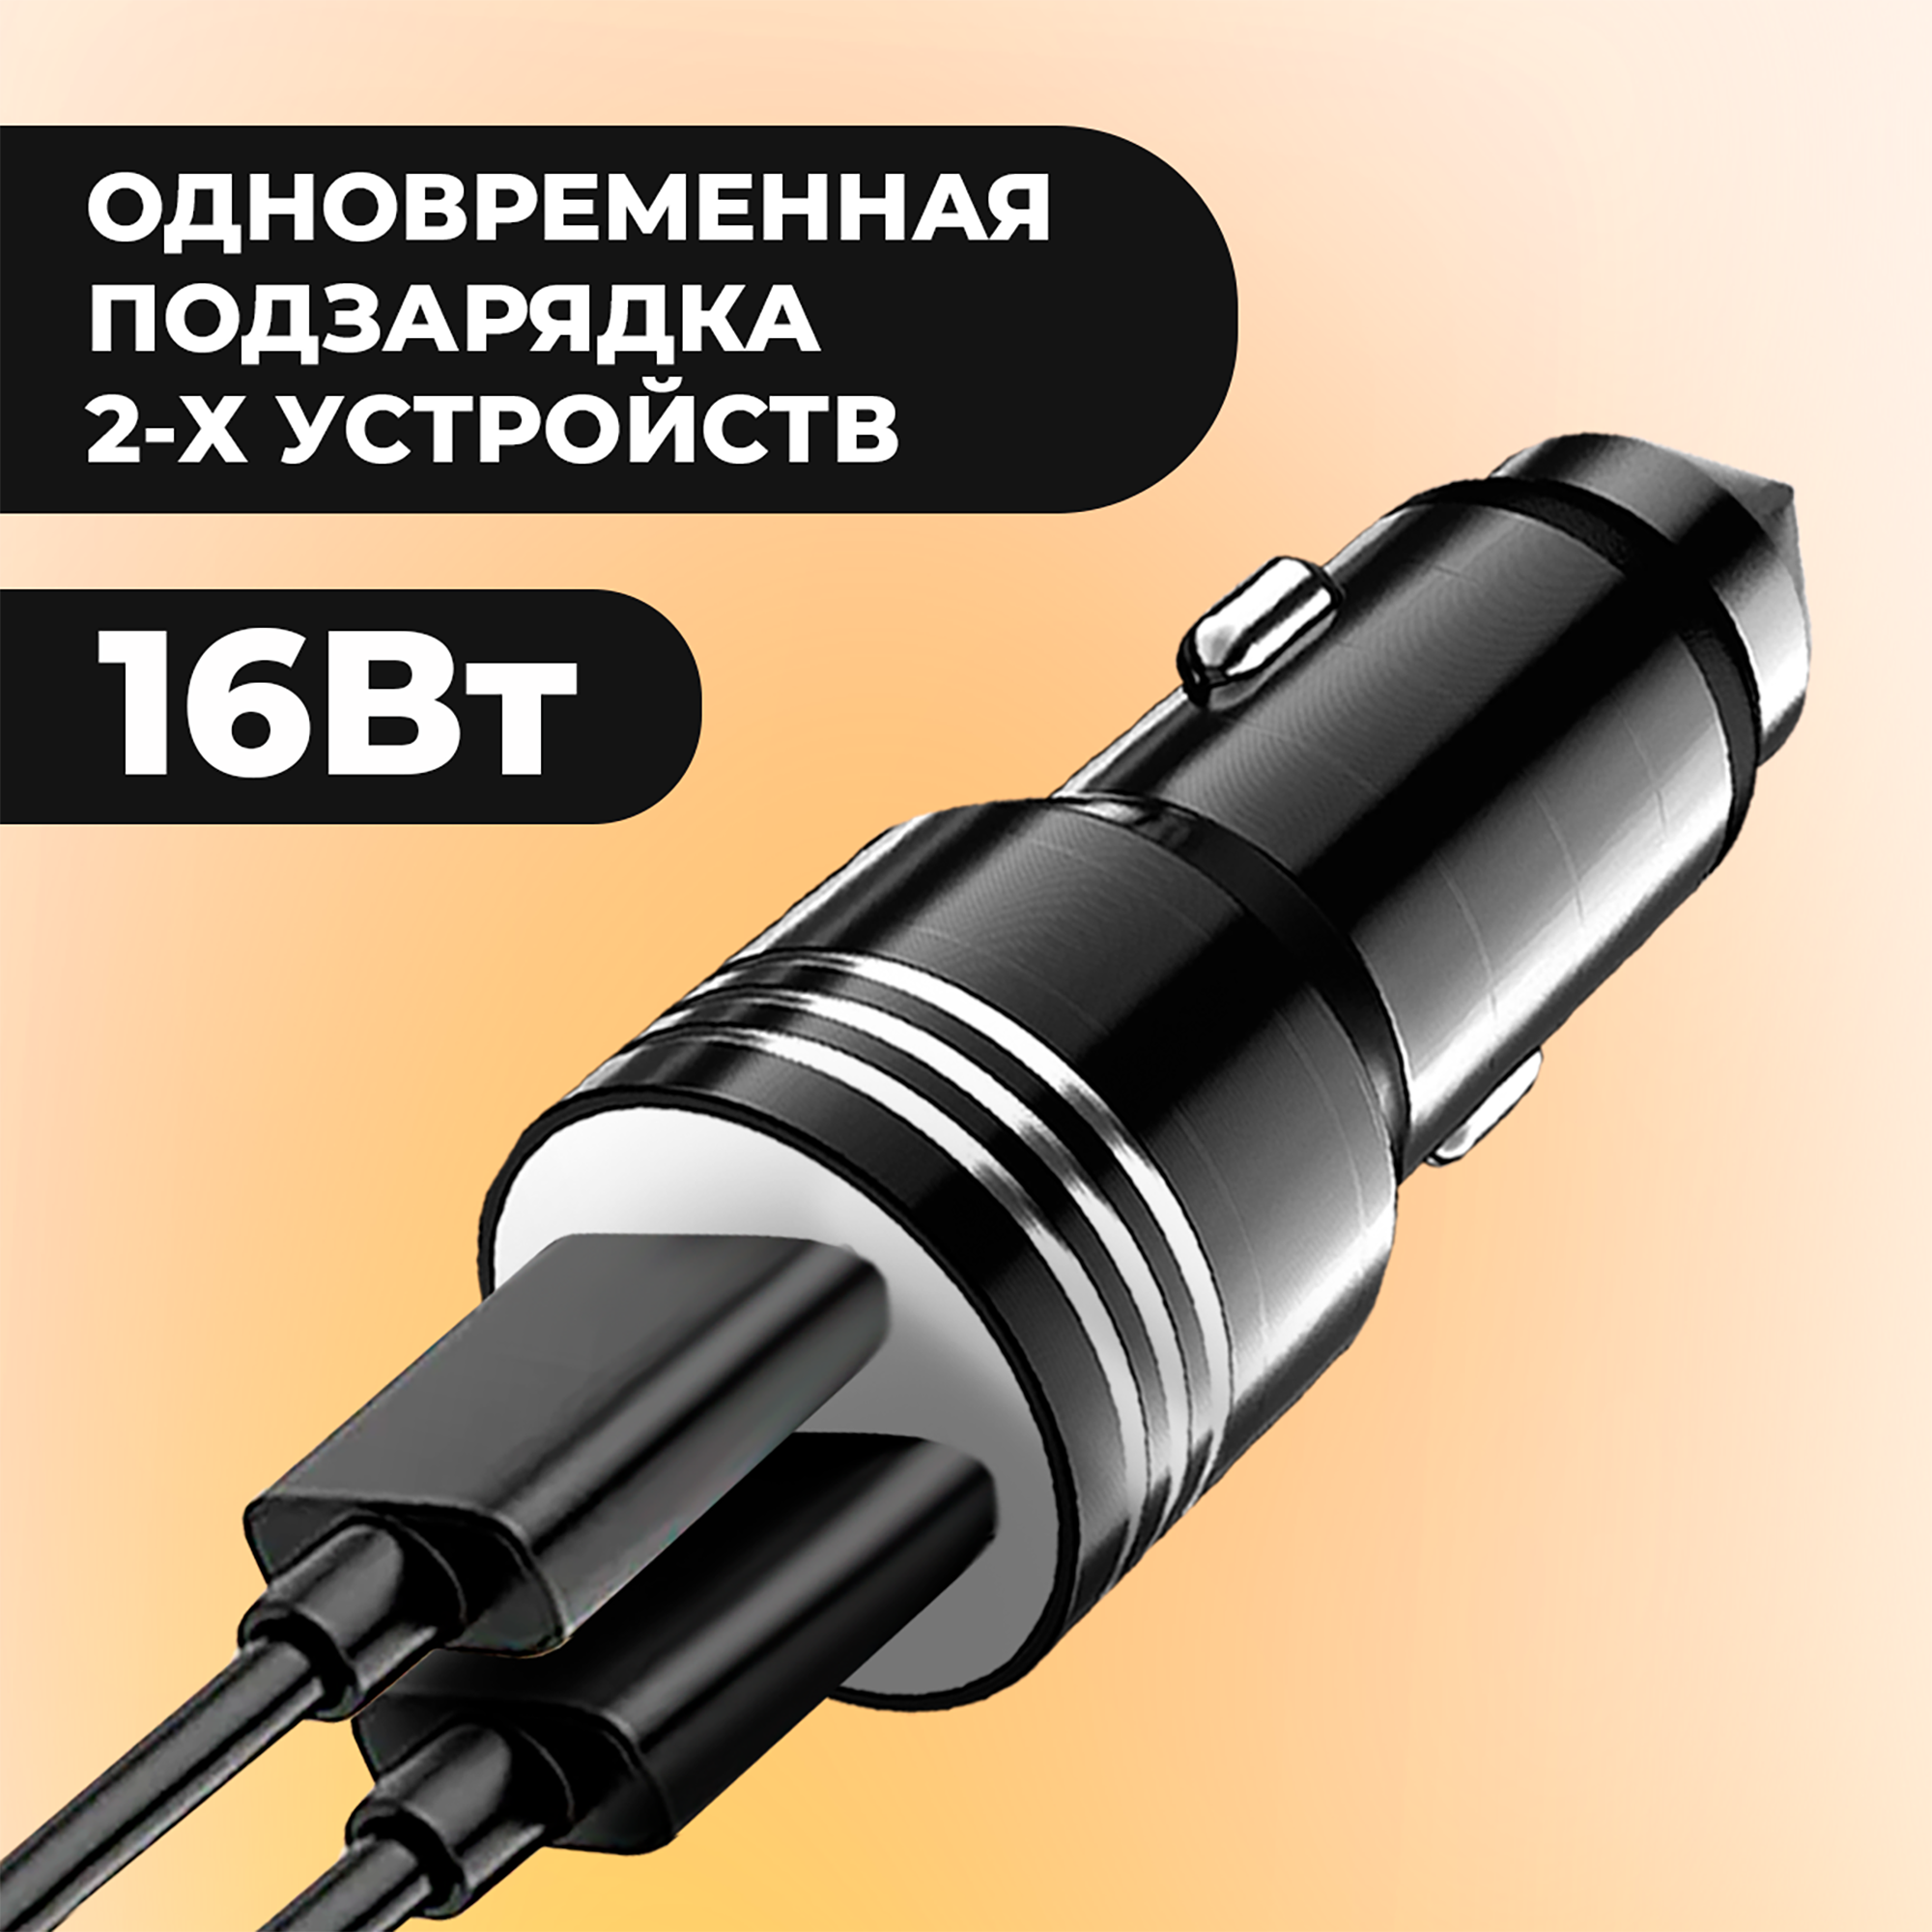 Автомобильная зарядка для телефона, AMFOX, CCH-11, универсальная, 2 USB, 2.4 А, зарядное устройство в прикуриватель, автозарядка в машину, черный